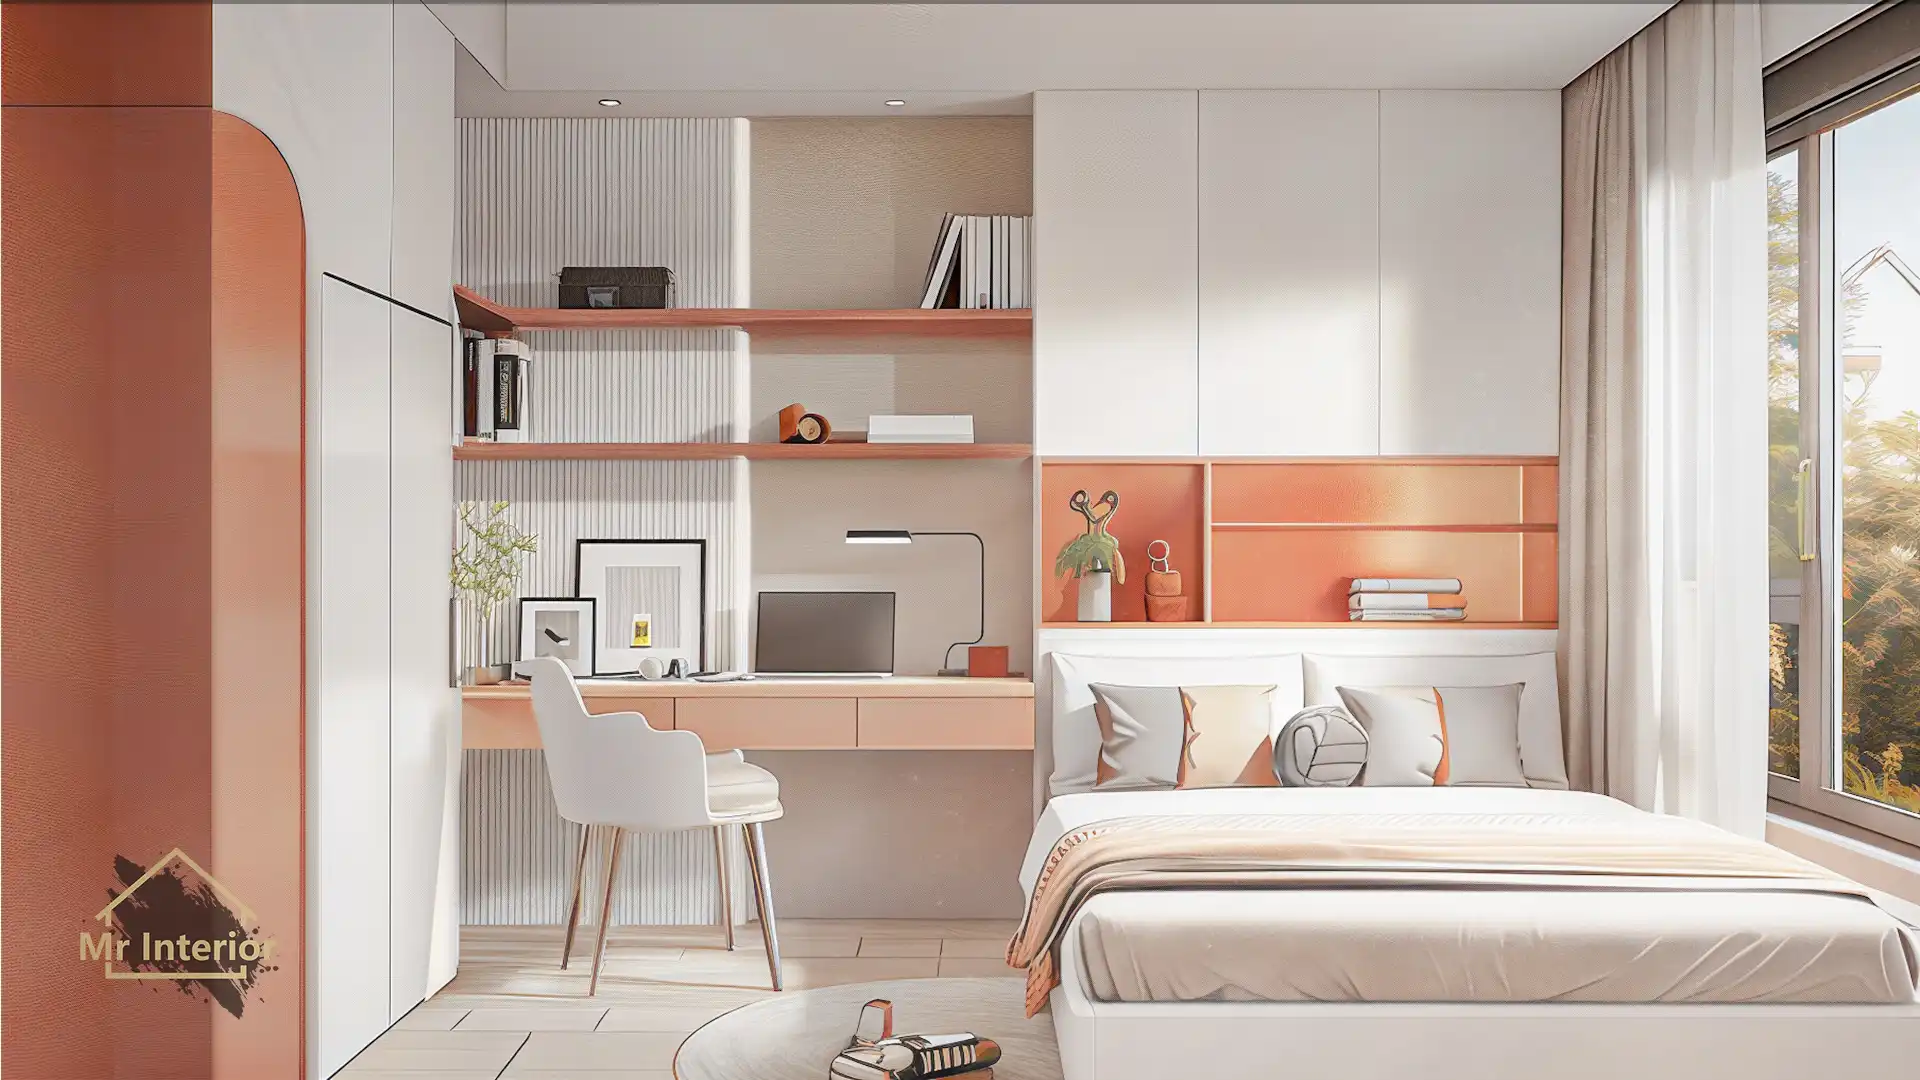 這是白羊座的睡房。設計風格探用了現代風；色調明亮，米色主調，橙色點綴；圖片中句含了床，白色及橙色掩門衣櫃，白色及橙色特色書枱書櫃書架，白羊座裝飾及自然光等。Mr Interior室內設計裝修及傢俬風格。